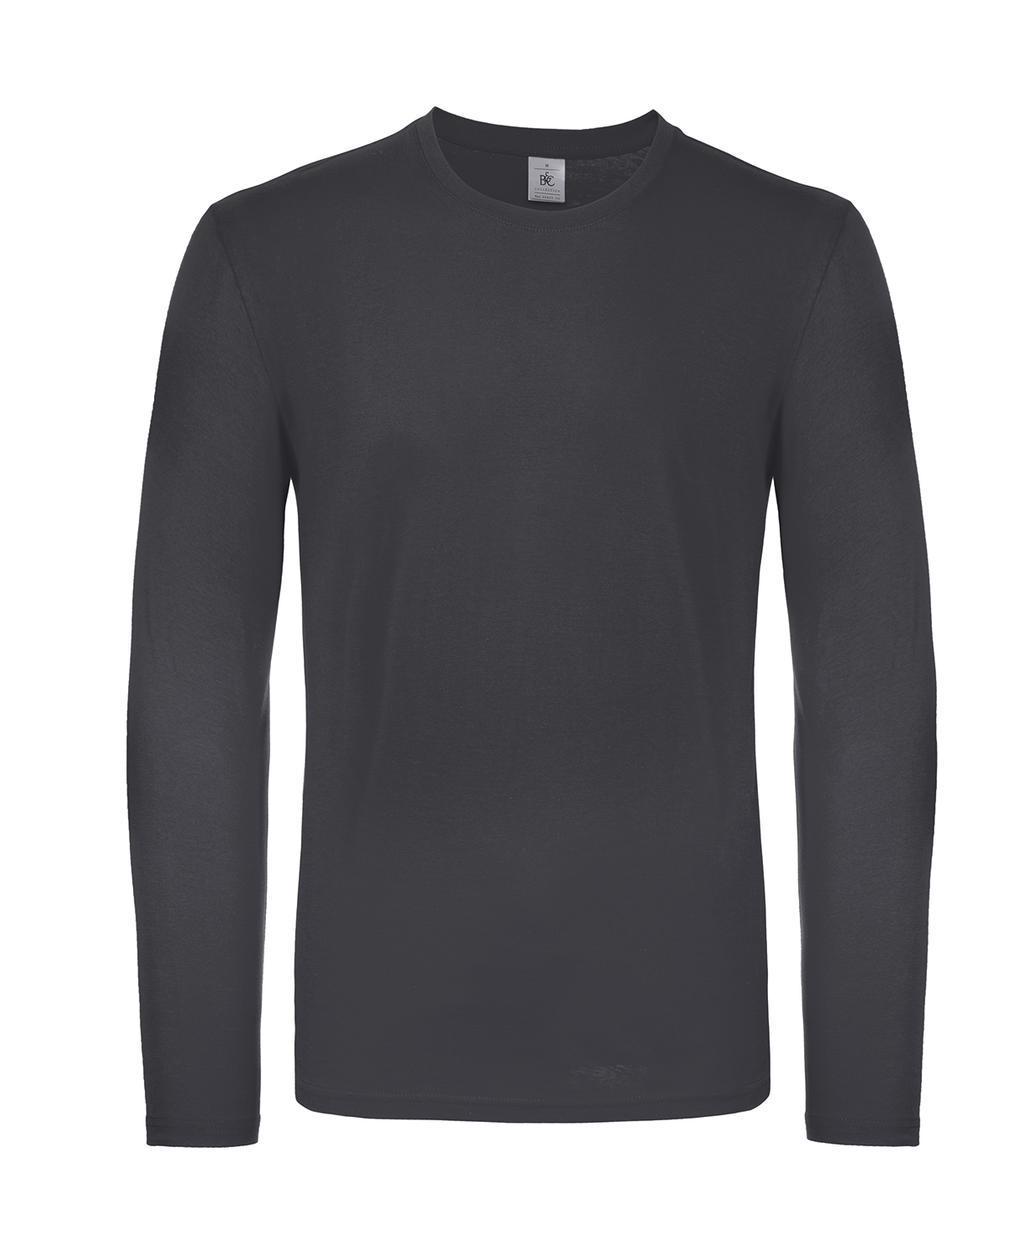 Tričko s dlhými rukávmi #E150 - dark grey